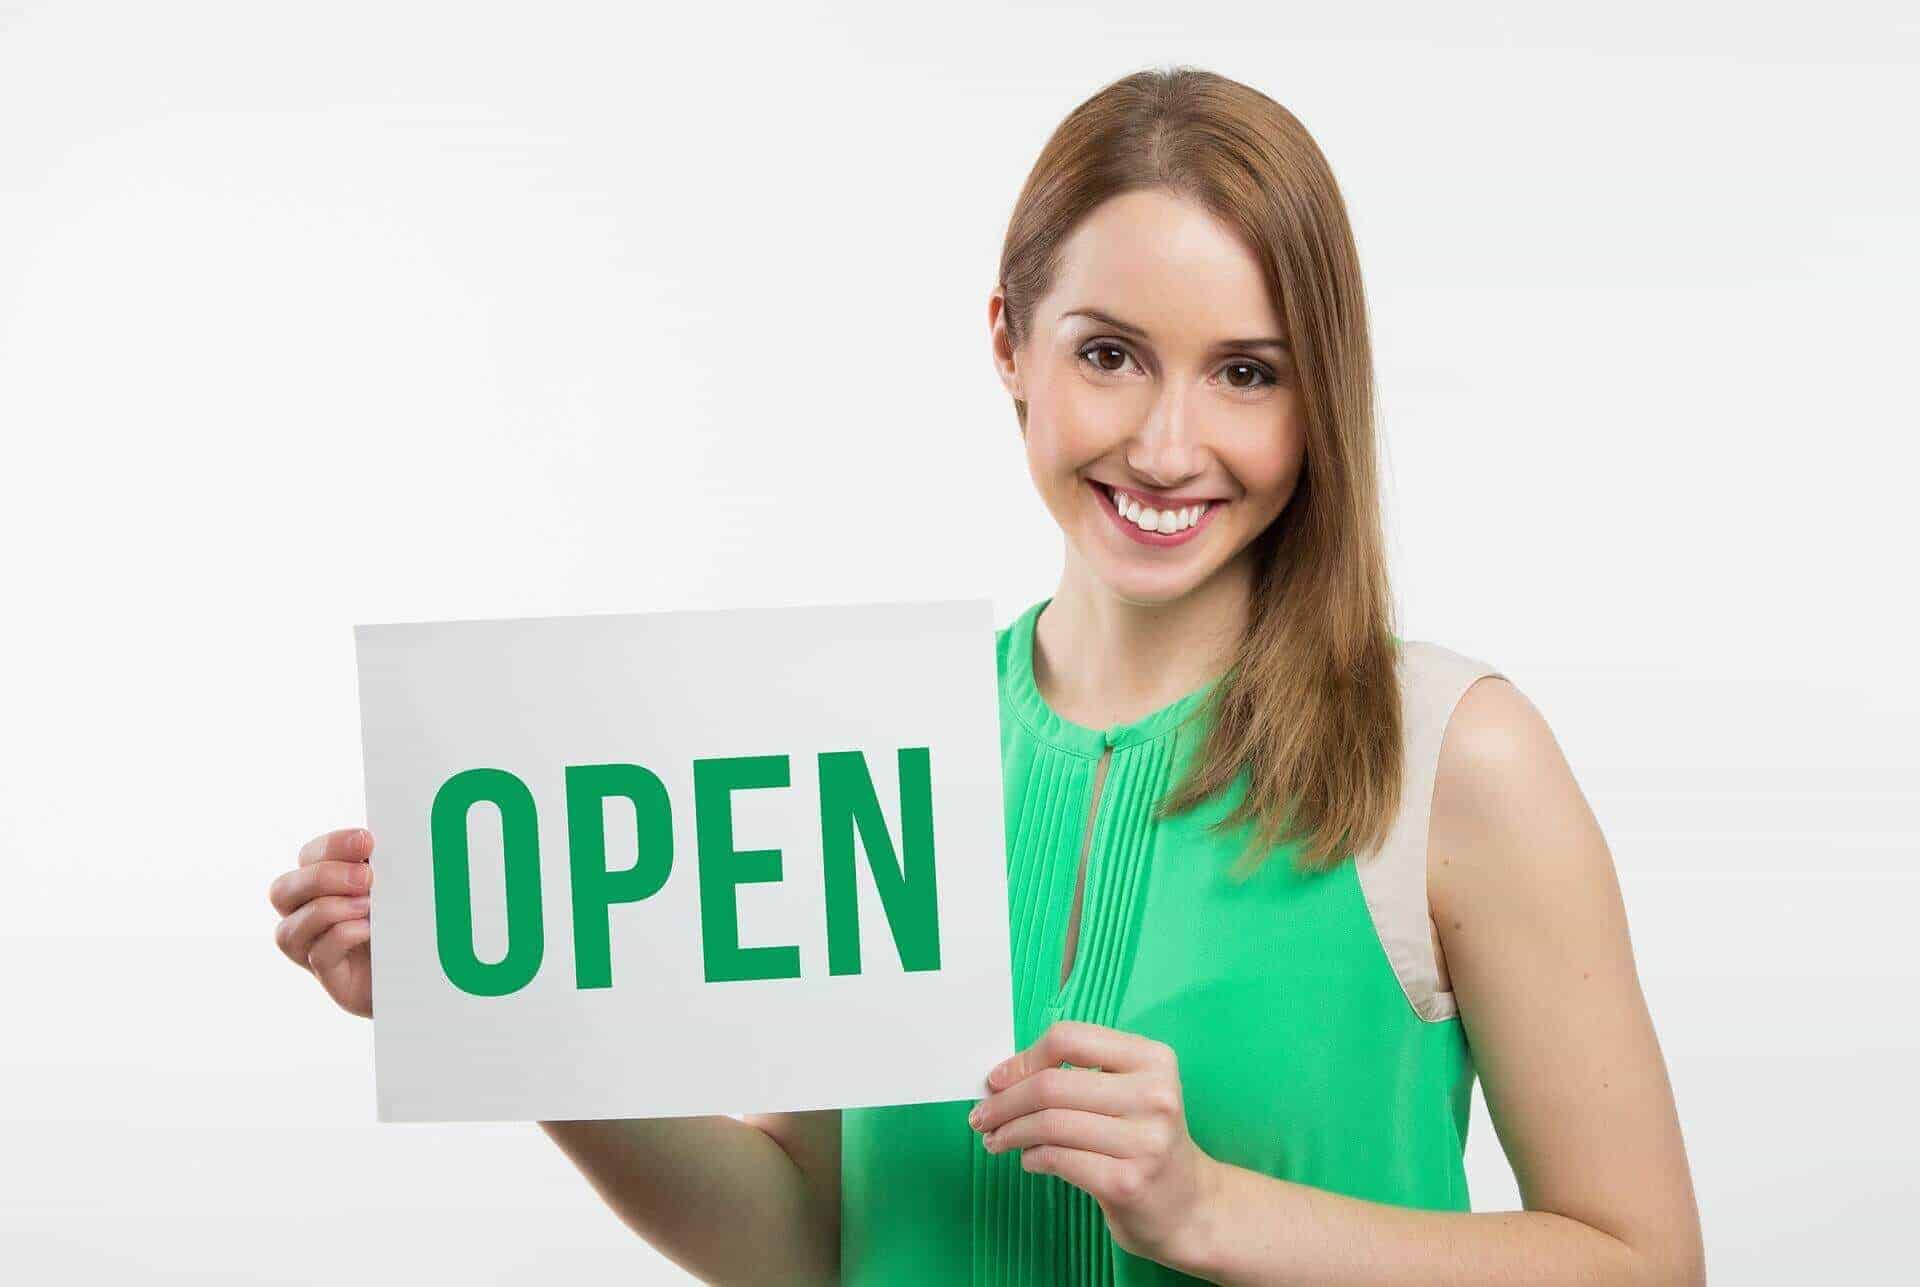 Frau hält auf lizenzfreiem Bild ein Schild mit der Beschriftung "Open"